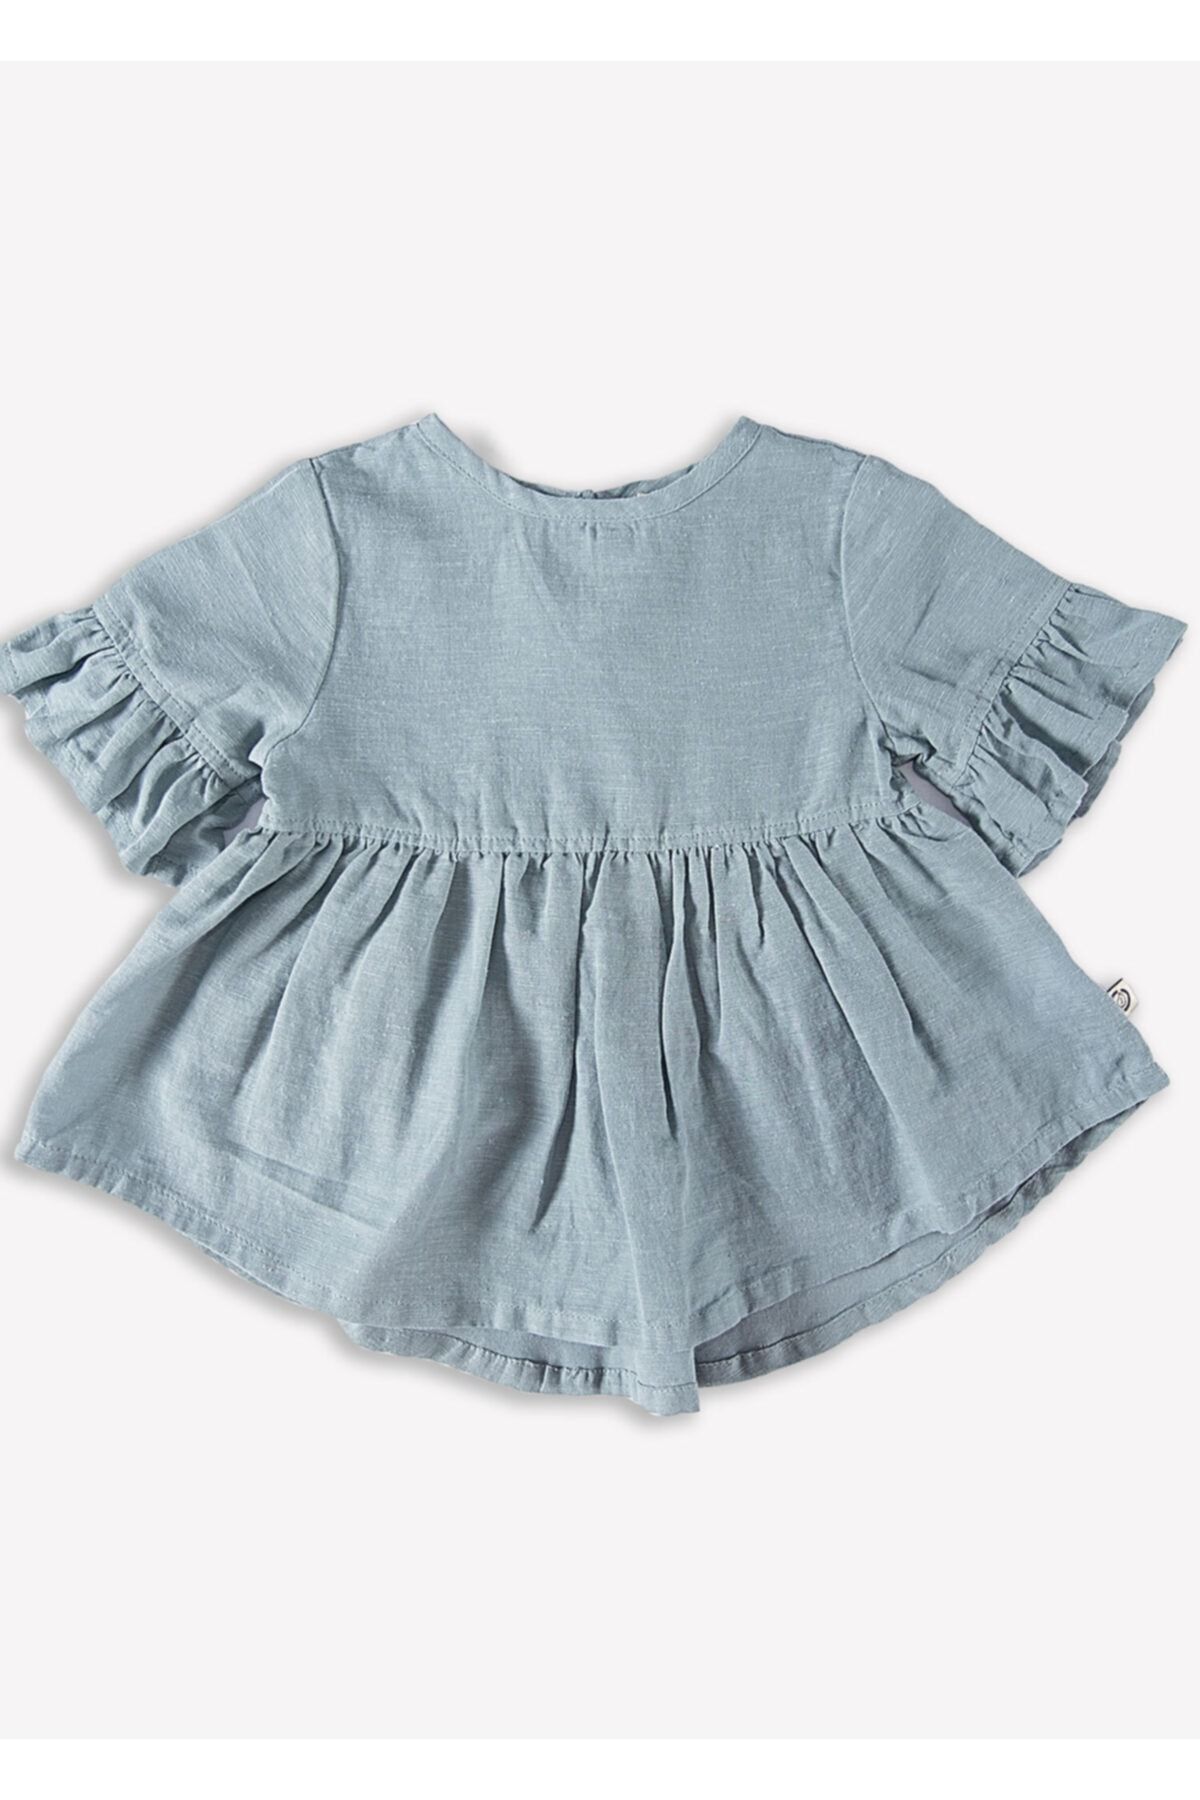 Ozmoz By Mukadder Özden Organik Kız Bebek Fırfırlı Yazlık Bluz (4 Farklı Renk Seçeneği İle)